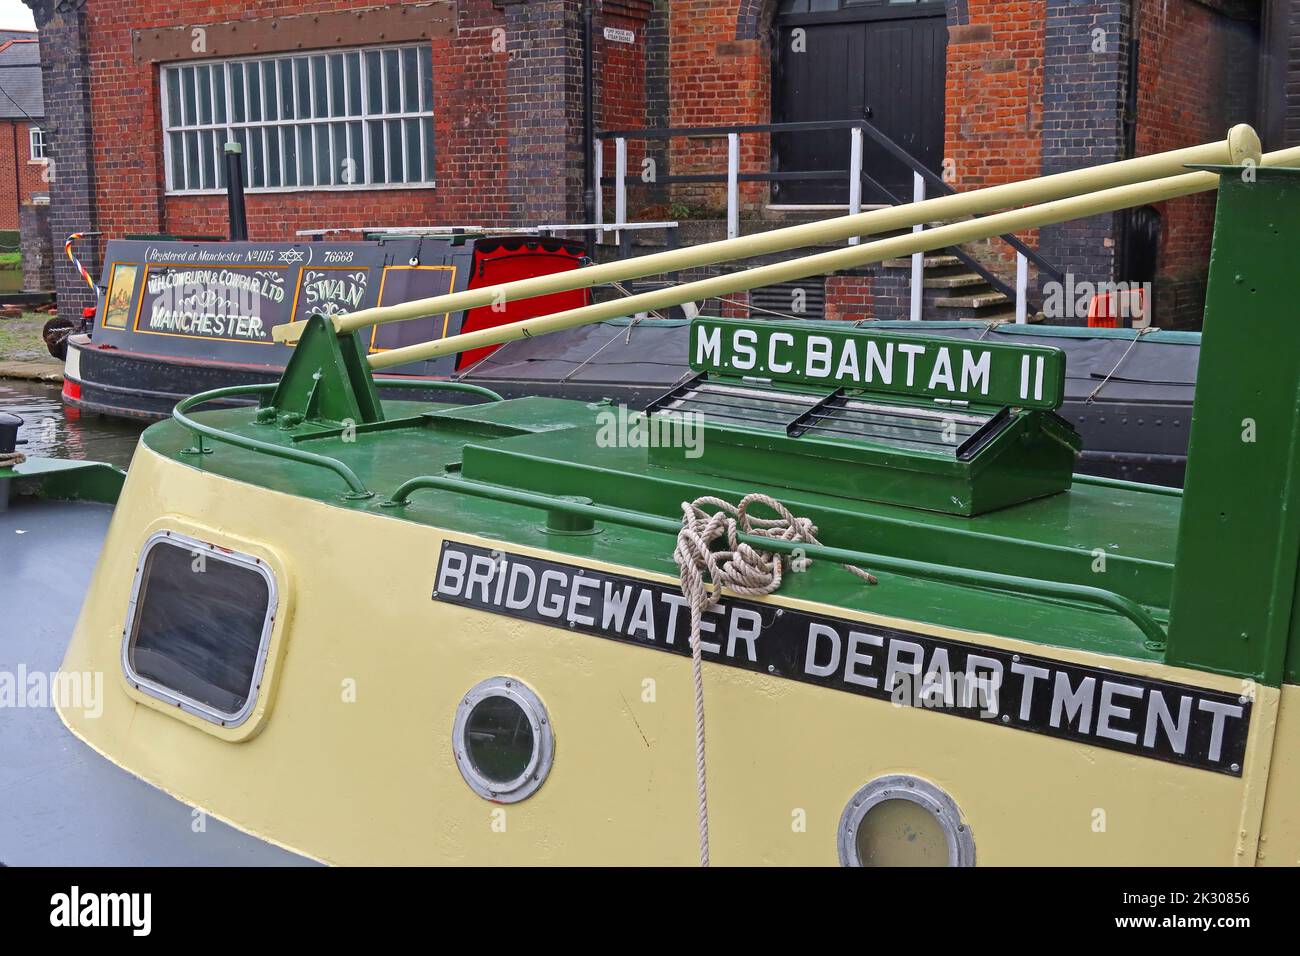 Il MSC Bantam II, MSCC Bridgewater Canal reparto di manutenzione barca, costruito da E.C. Jones & Son, Brentford Lighterage Tug precedentemente gestito da MSCC Foto Stock